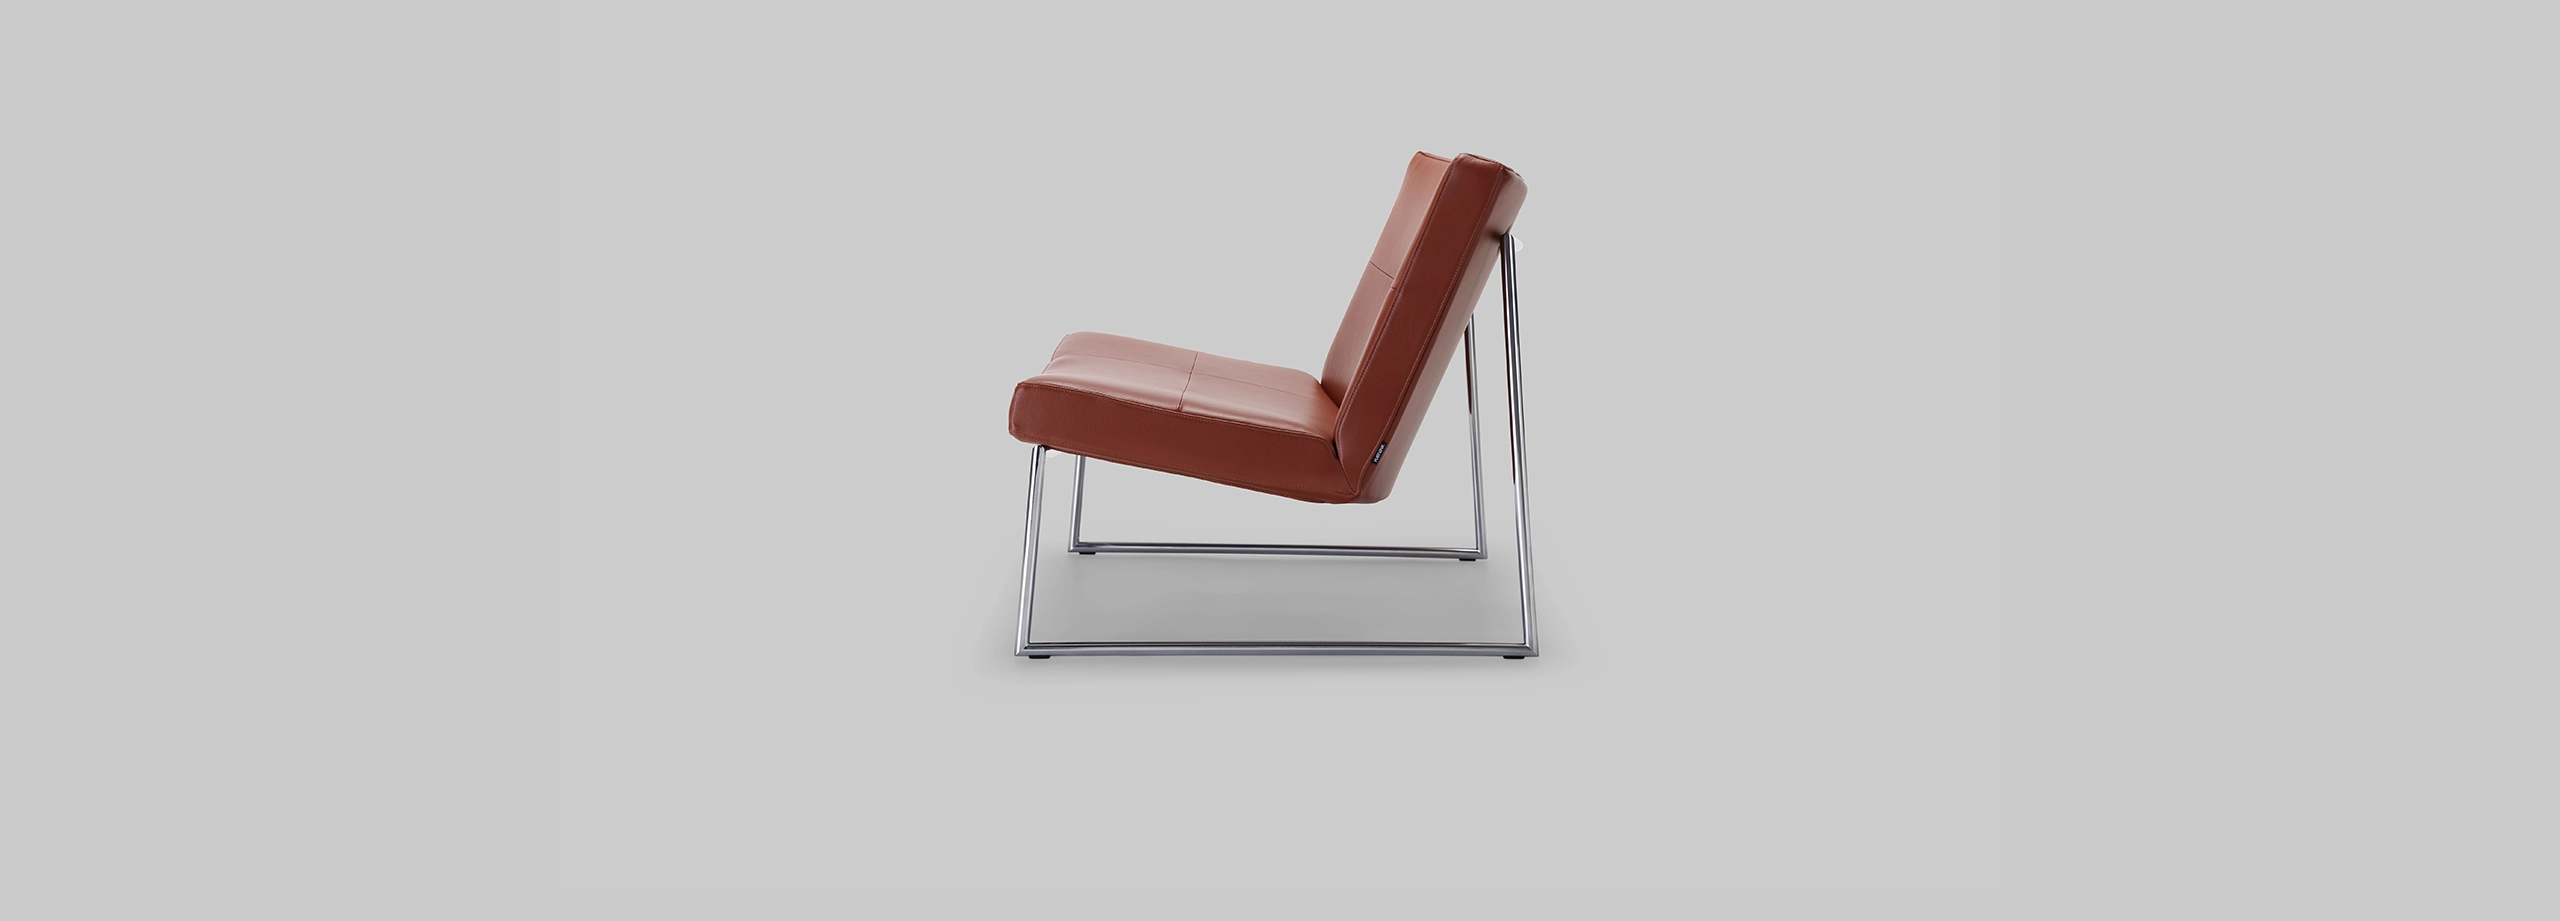 Harvink fauteuil Hebbes in leer cognac bruin met frame geschuurd chroom